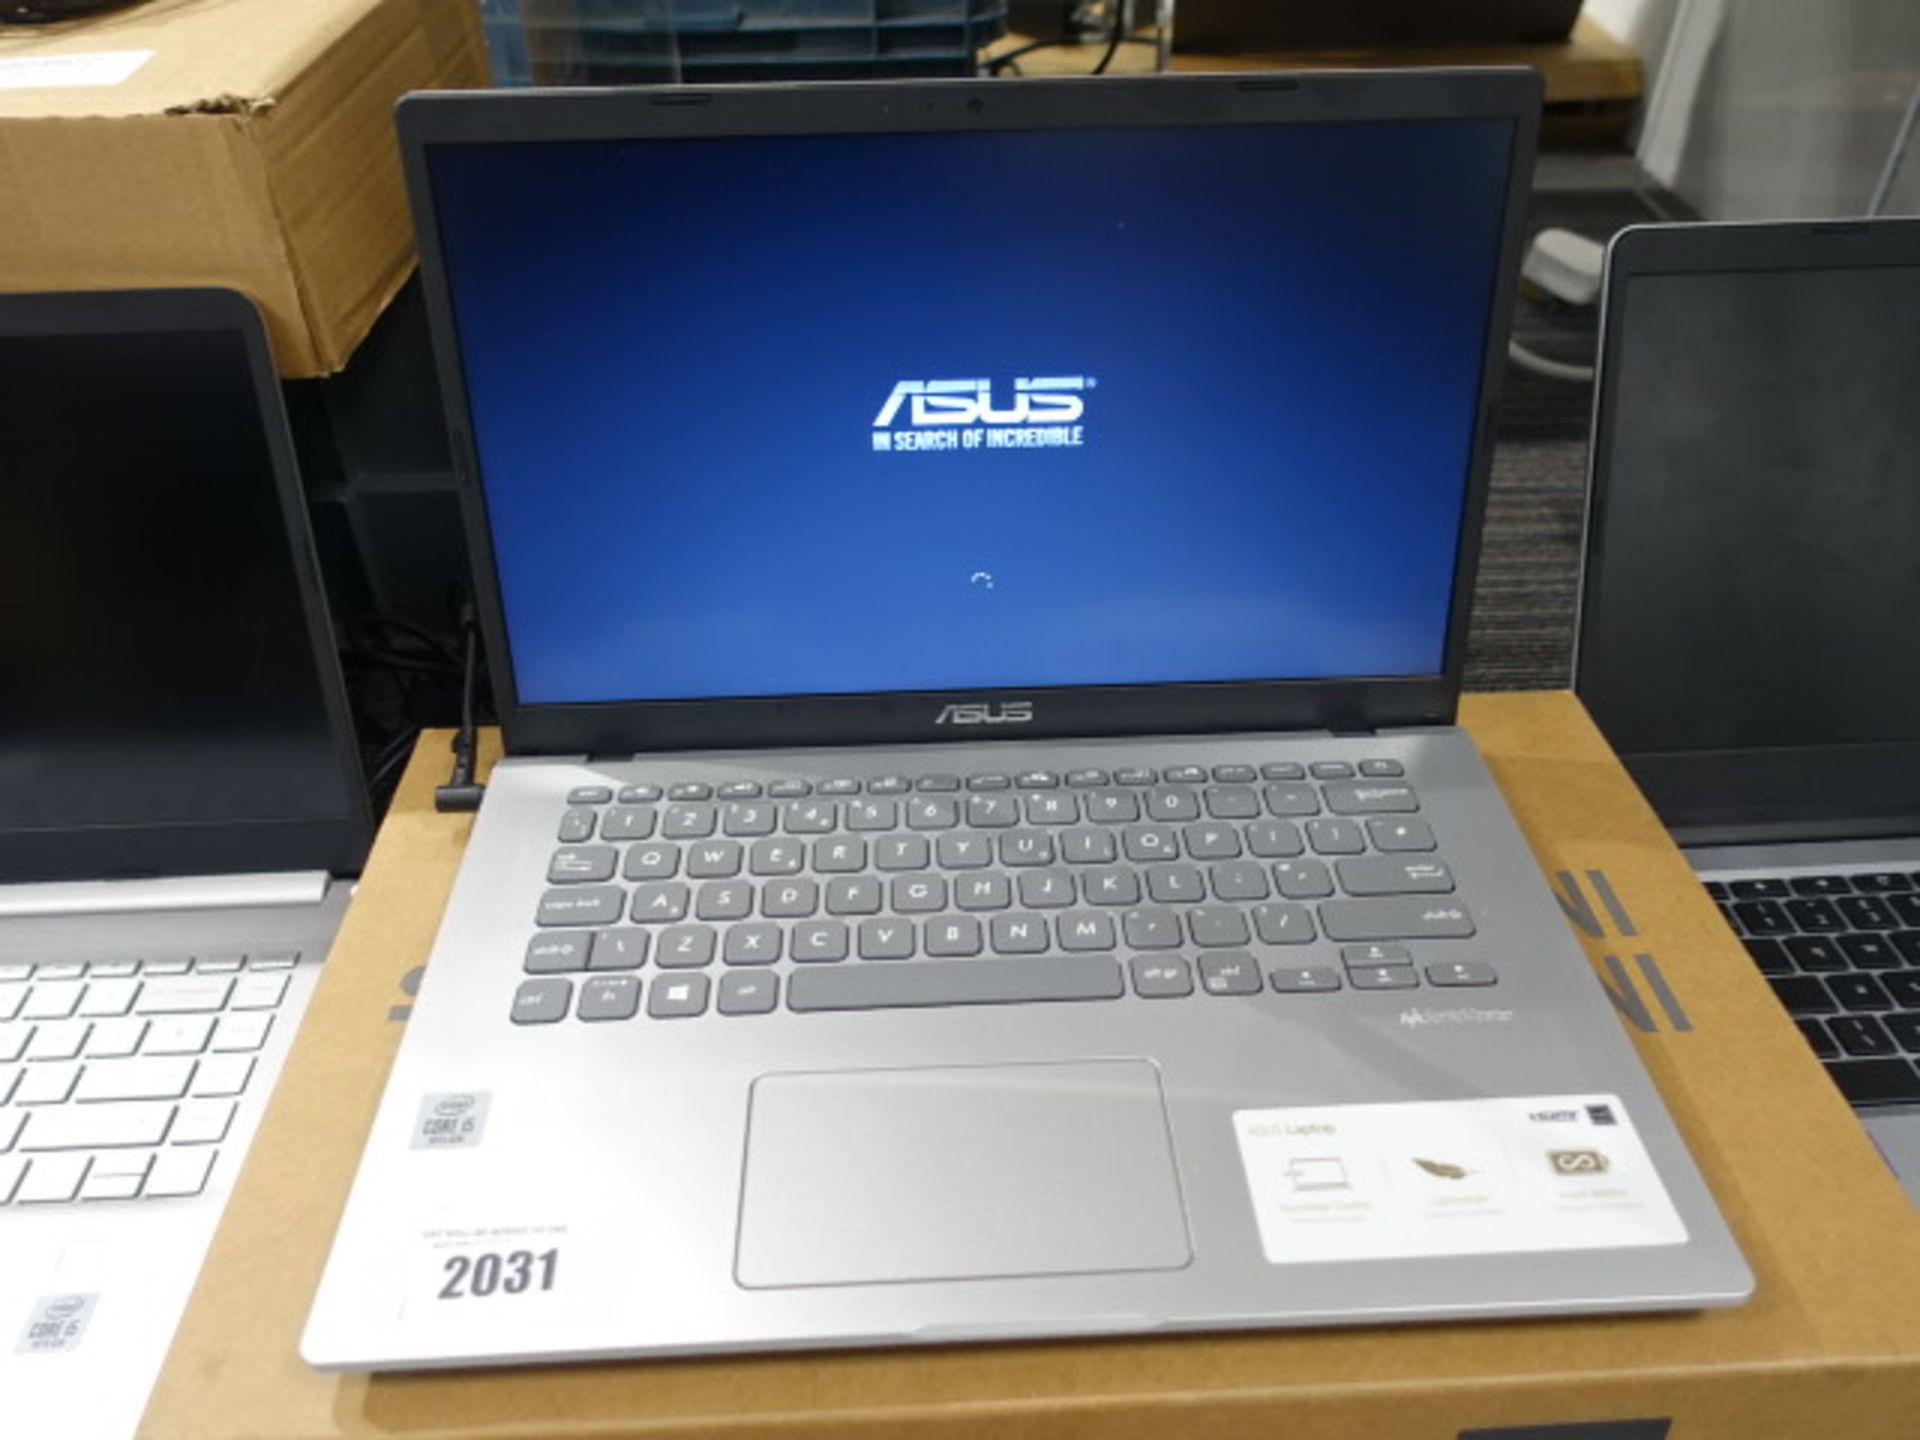 Asus X409J Windows 10 laptop, core i5 10th gen processor, 8gb ram, 256gb storage